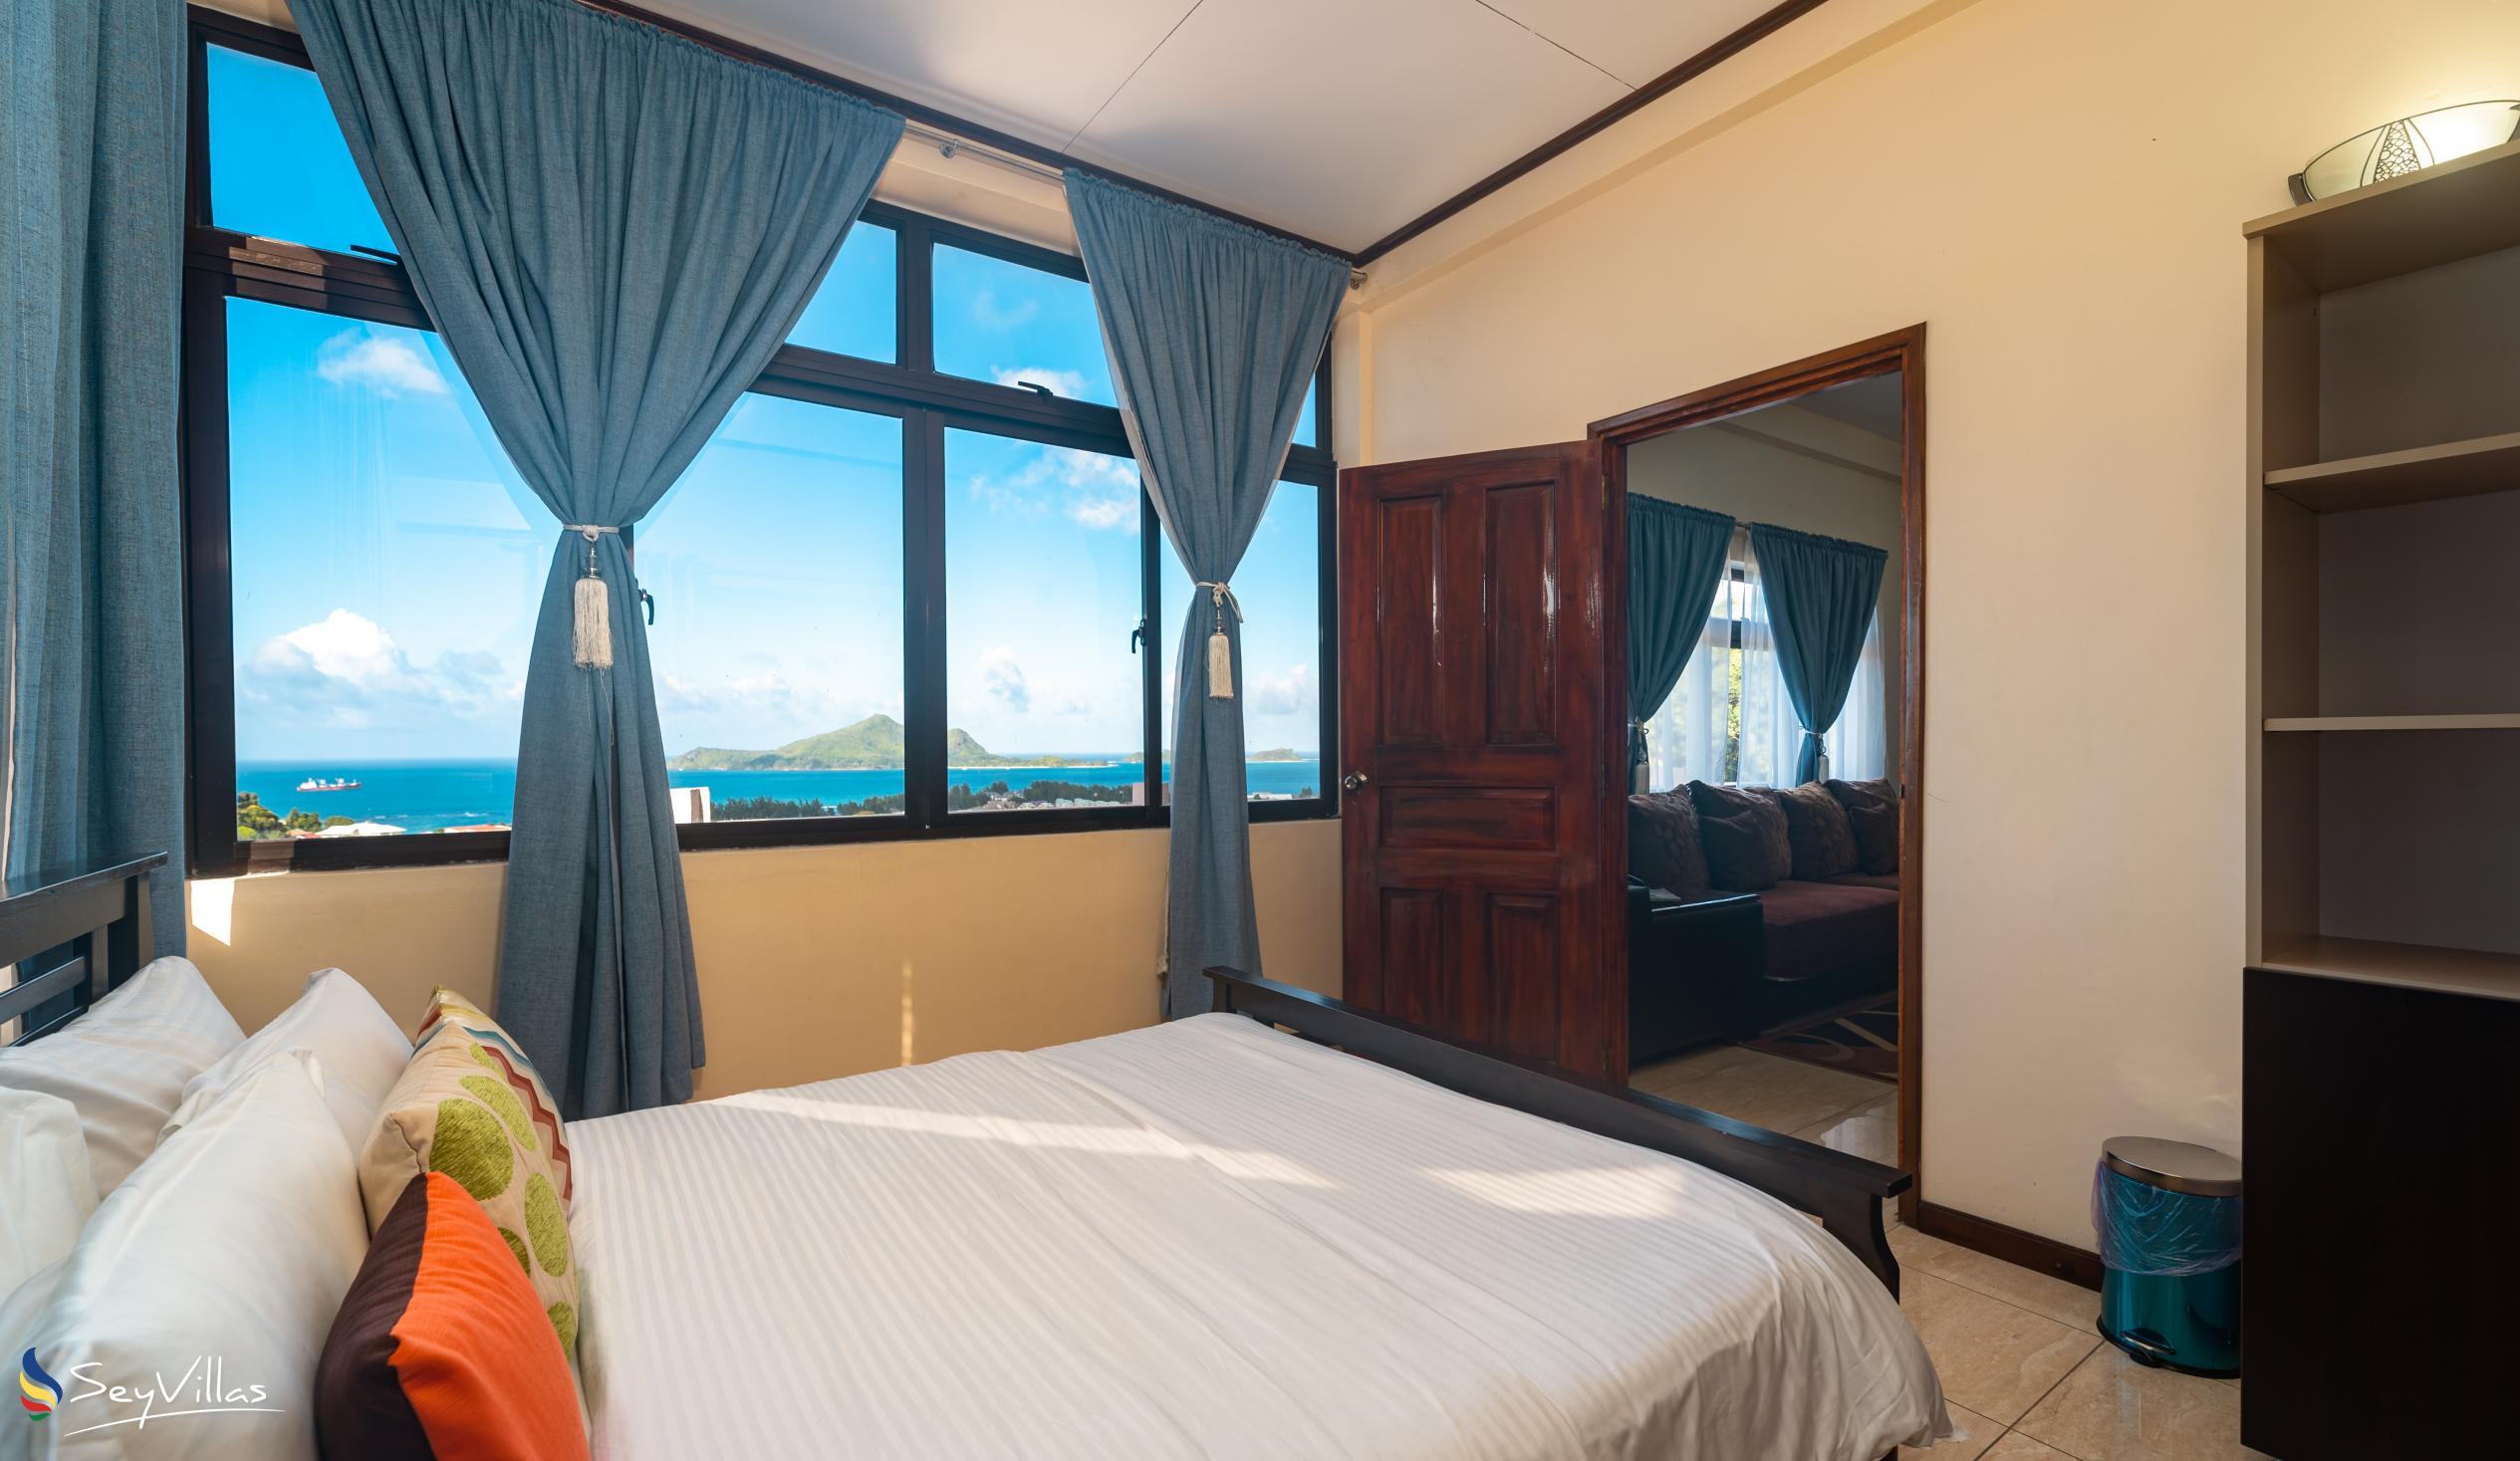 Foto 105: Maison L'Horizon - Appartement 3 chambres Lorizon - Mahé (Seychelles)